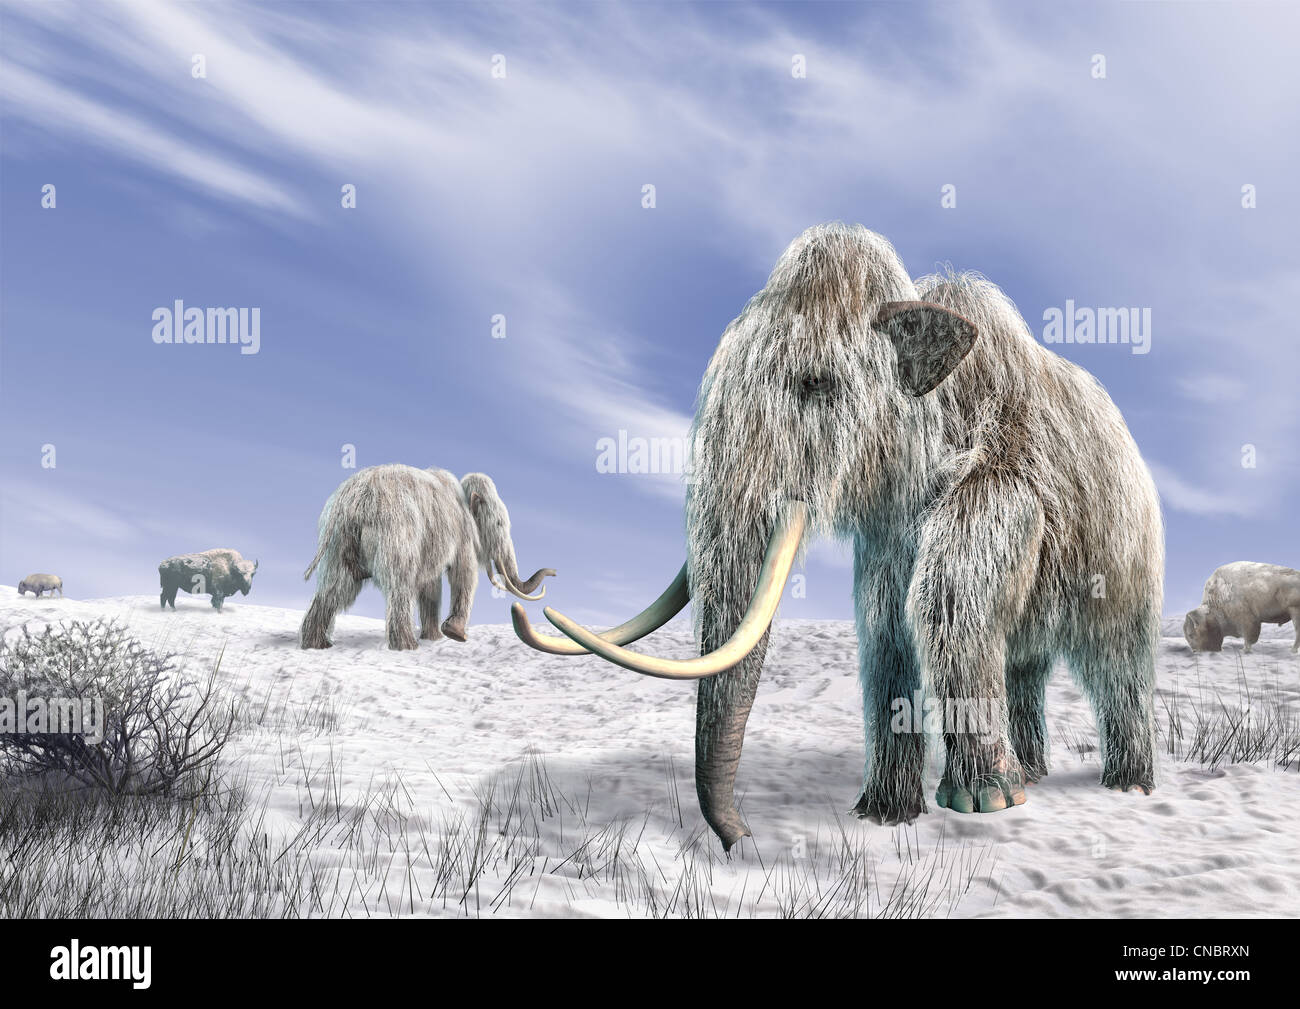 Zwei Mammut in einem Feld bedeckt von Schnee, mit einigen Büschen und ein paar Bisons. Blauer Himmel mit Wolken im Hintergrund. Stockfoto